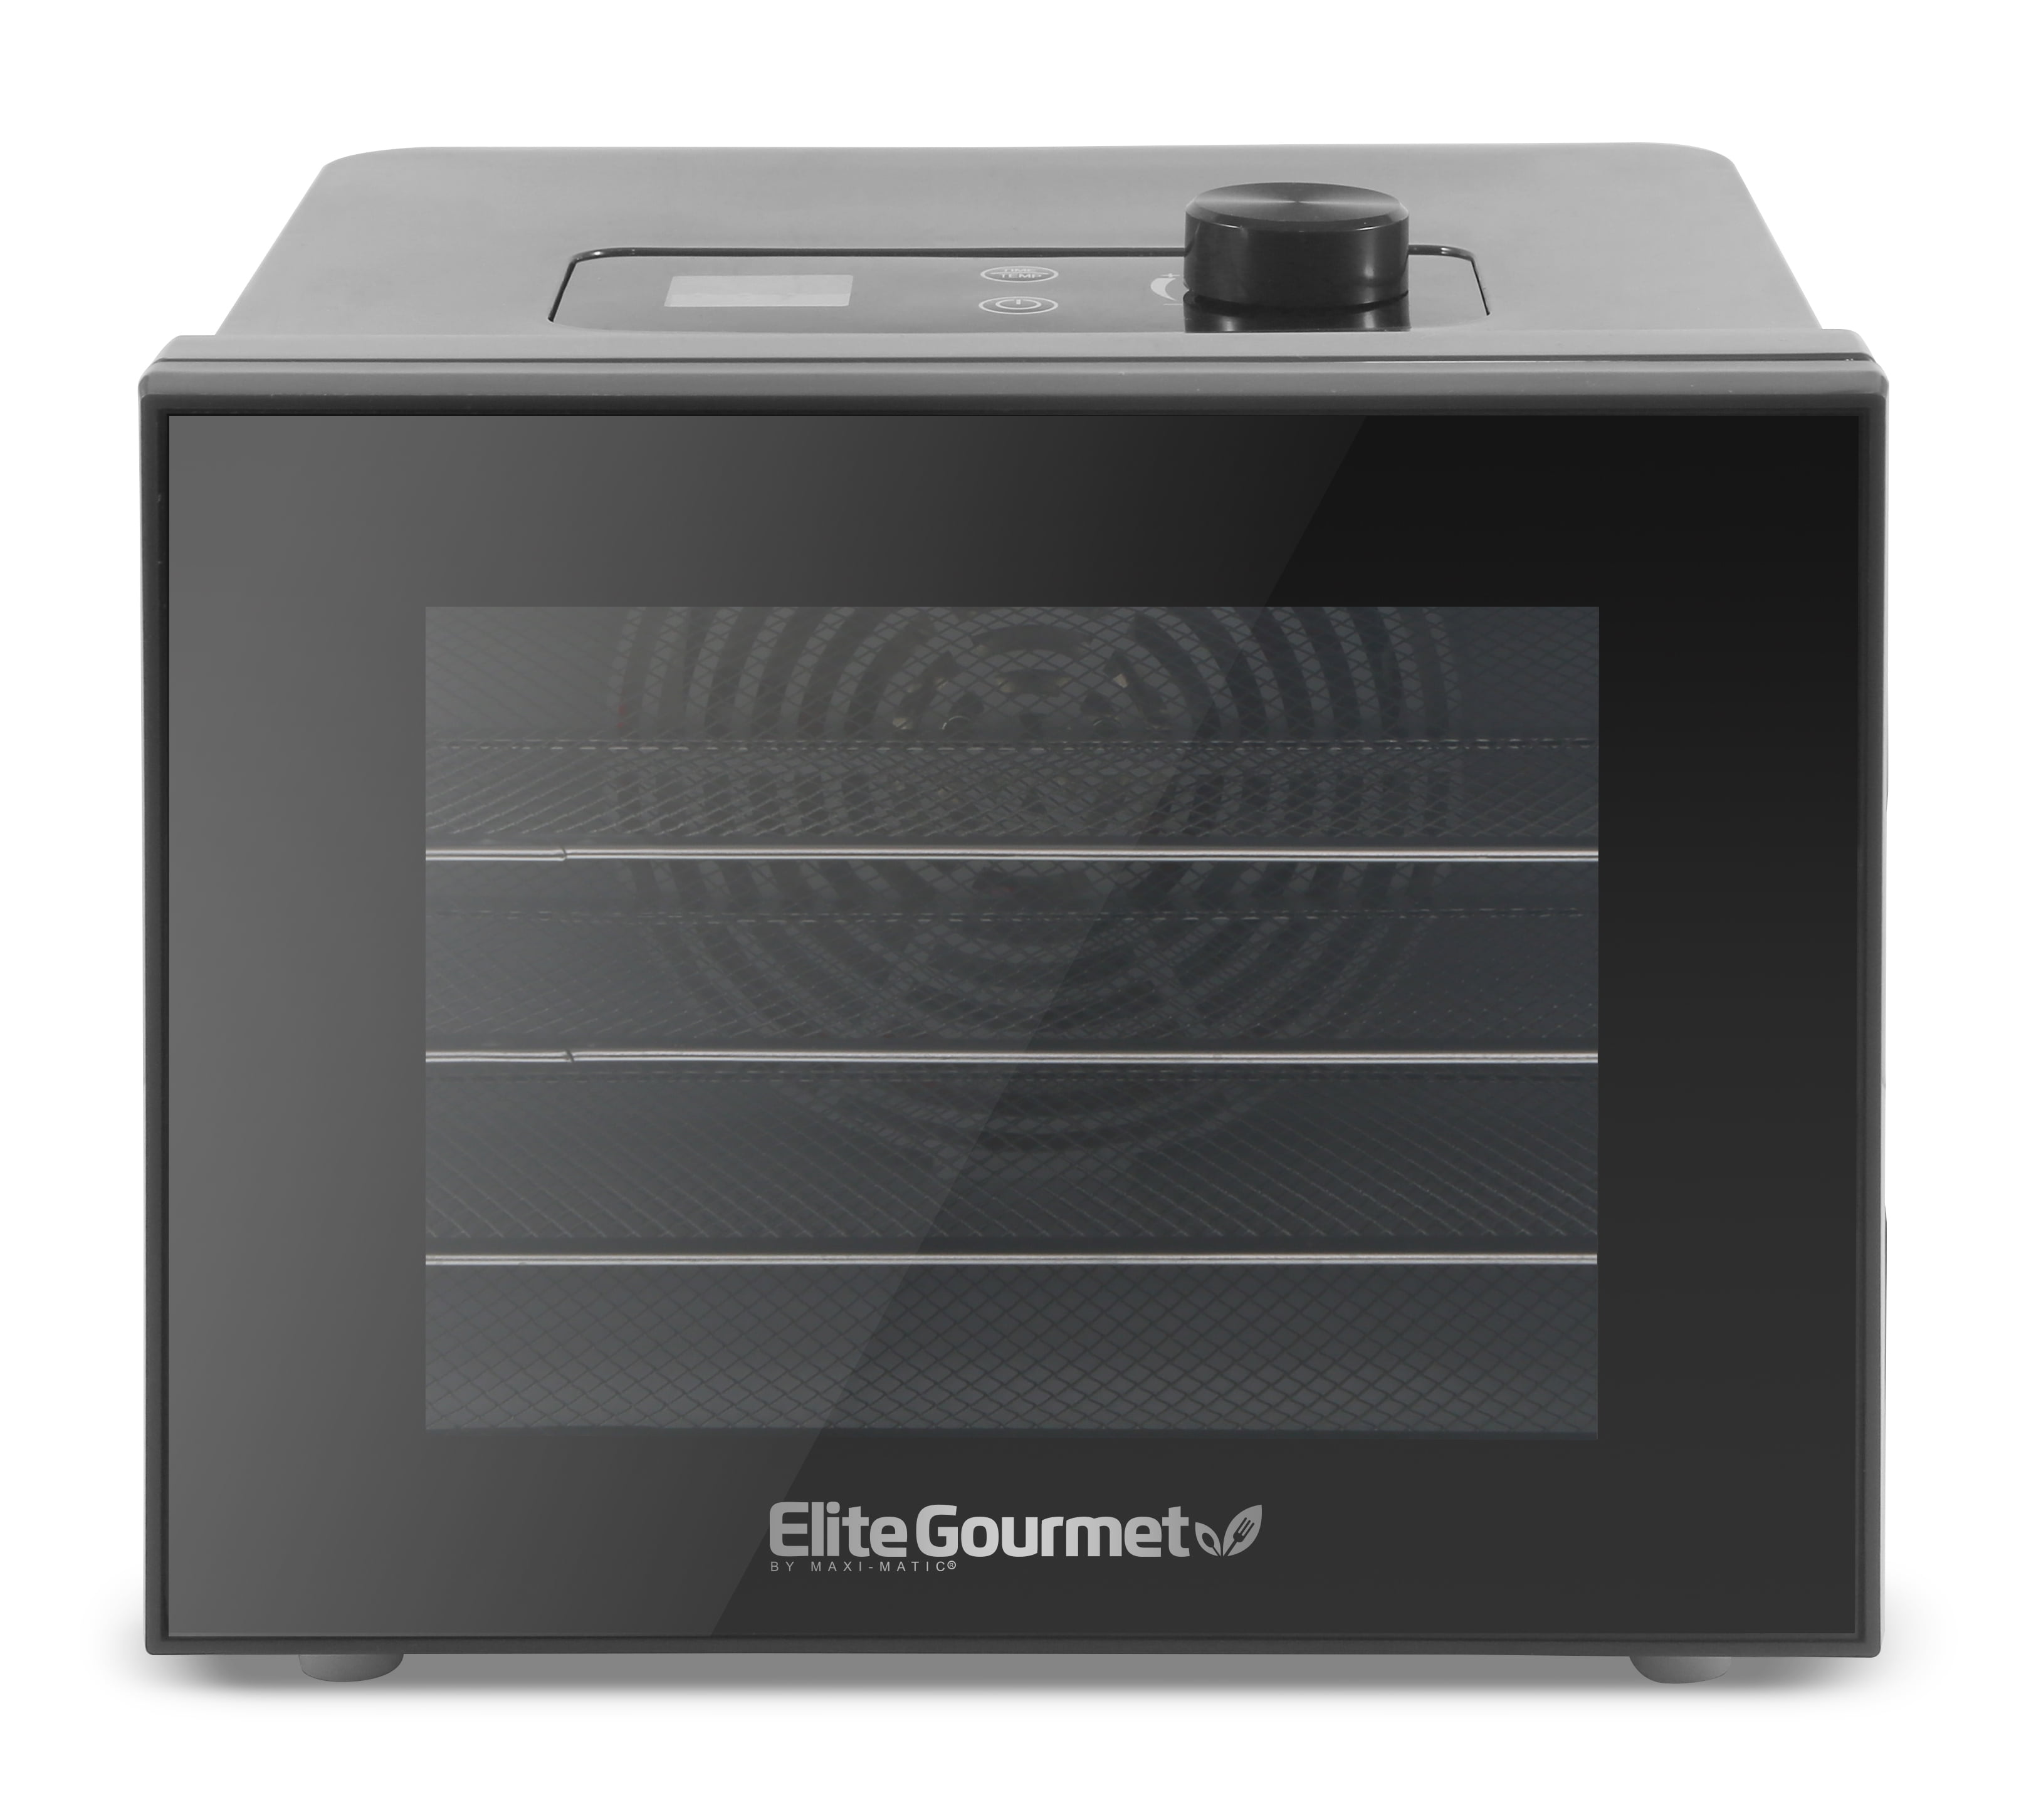 Elite Gourmet EFD770WD Digital Food Dehydrator with 5x12.5” BPA